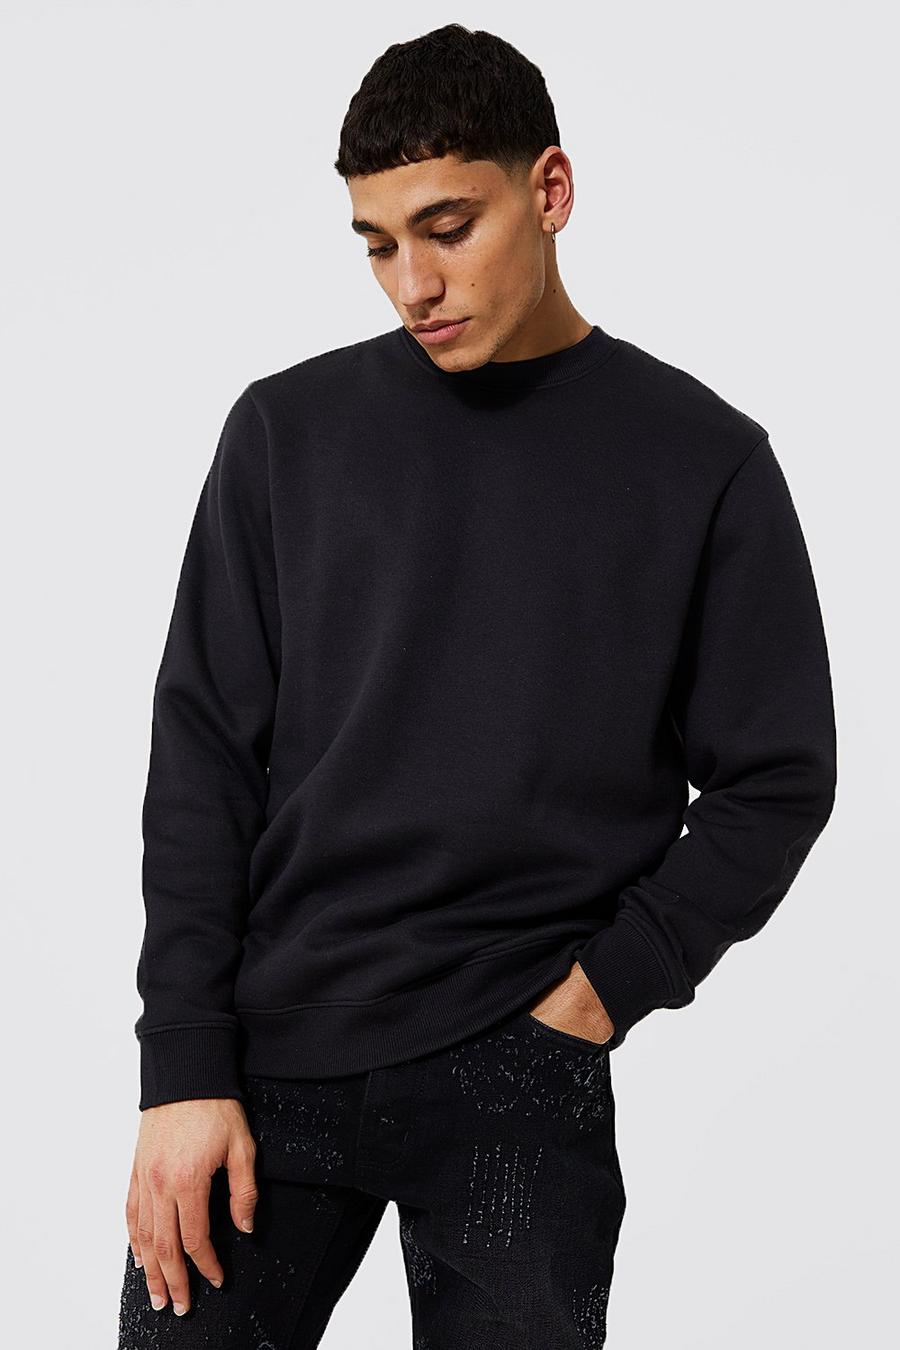 Men's Sweaters | Shop Hoodies & Men's Sweats | boohoo UK